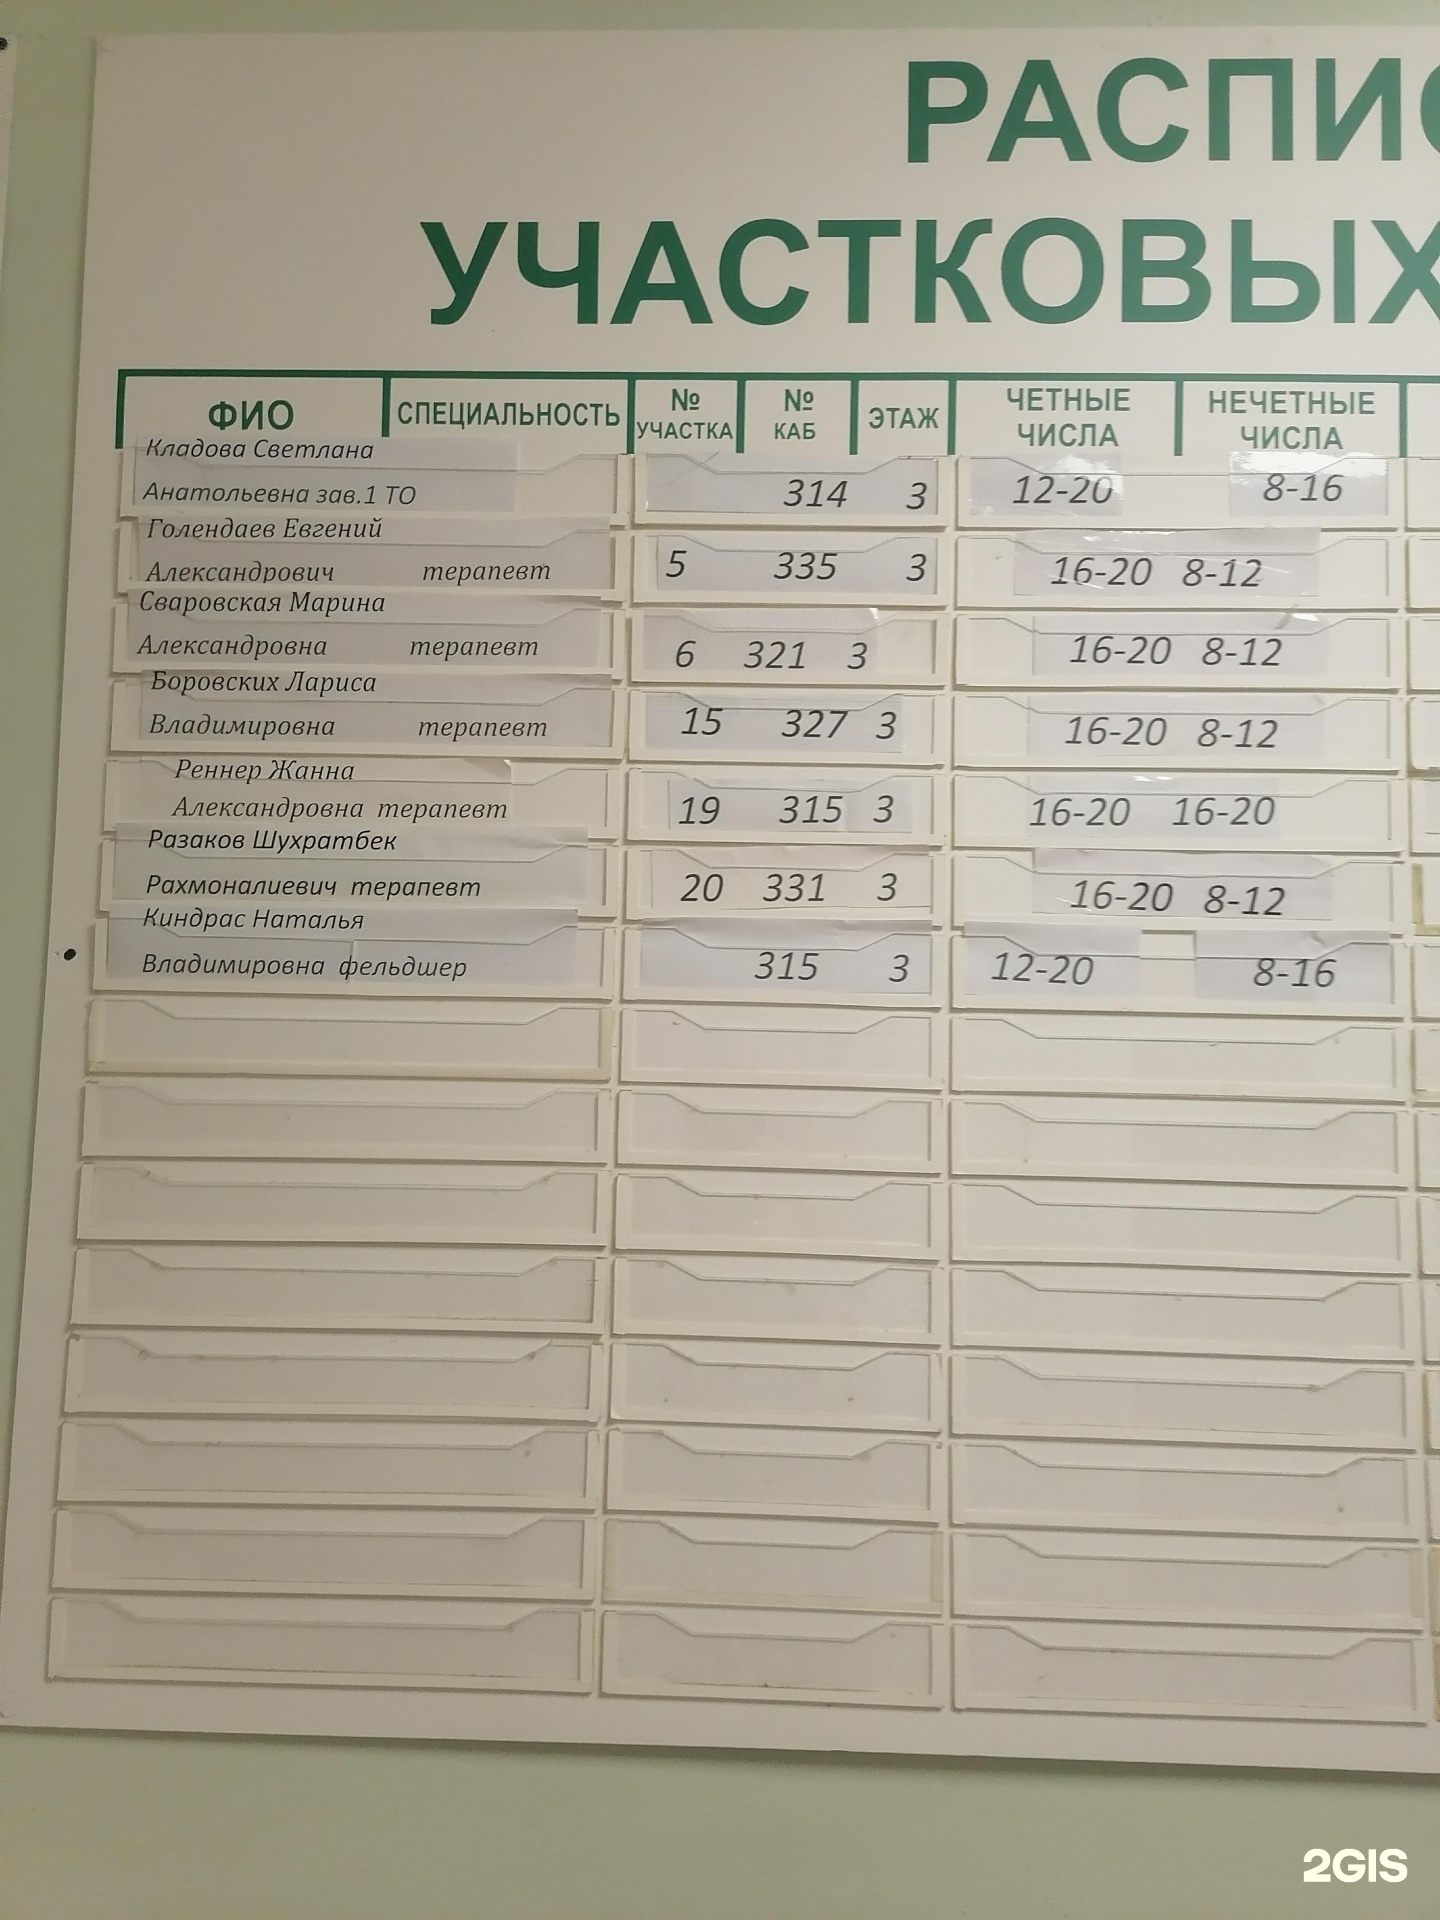 Ату 209 каб. Поликлиника 18 Новосибирск. Поликлиника 113.